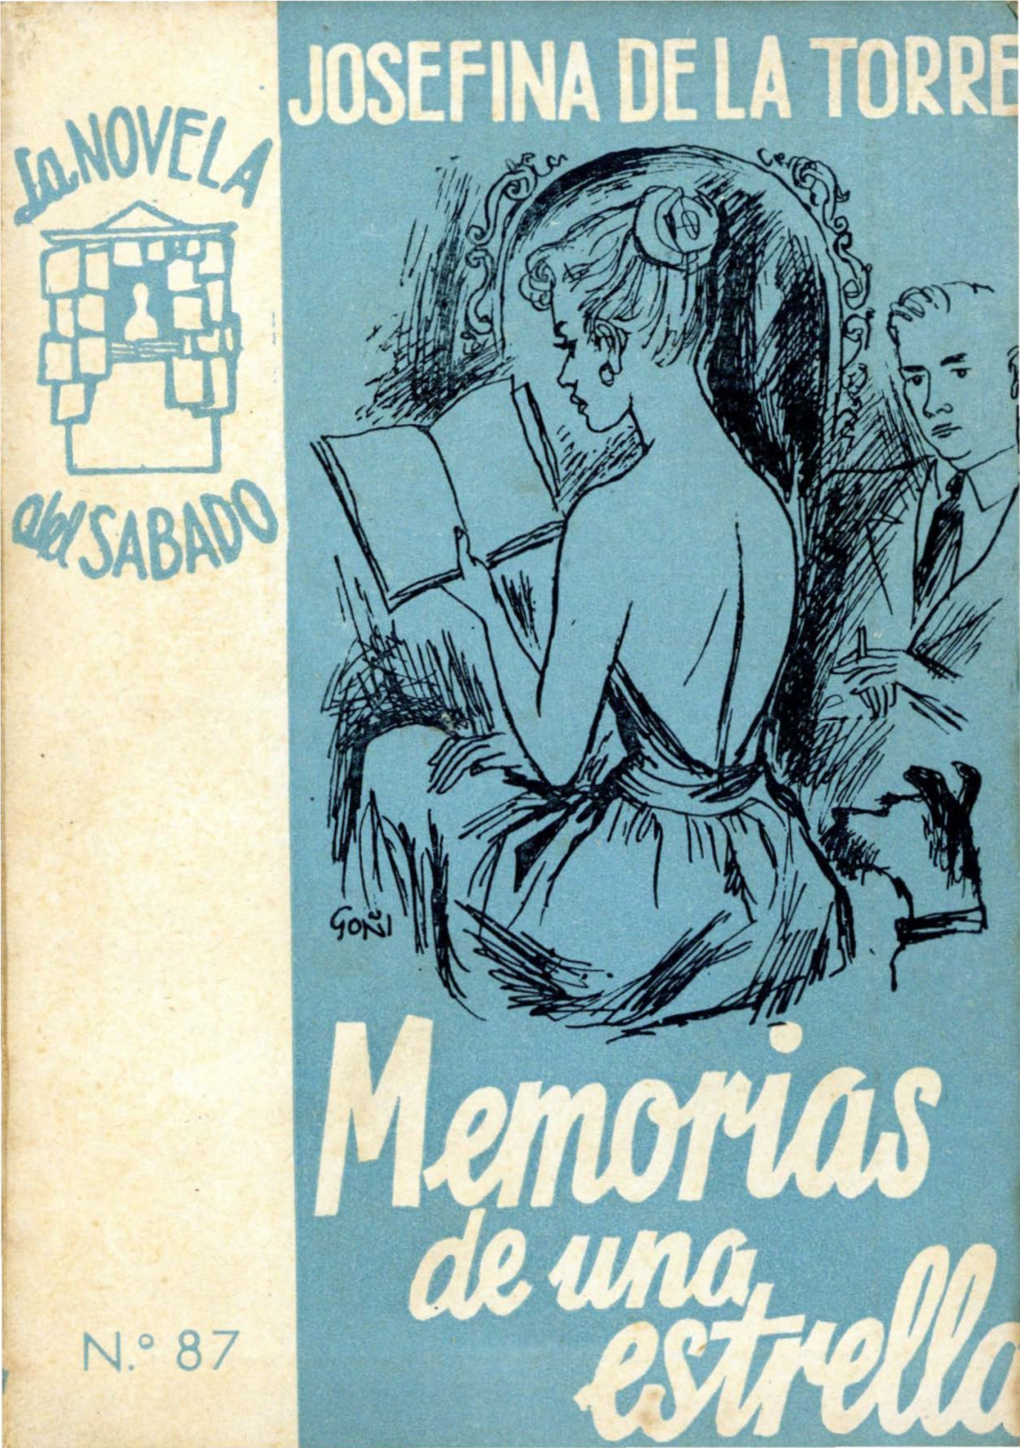 MEMORIAS DE UNA ESTRELLA 2019 Universitaria, Biblioteca